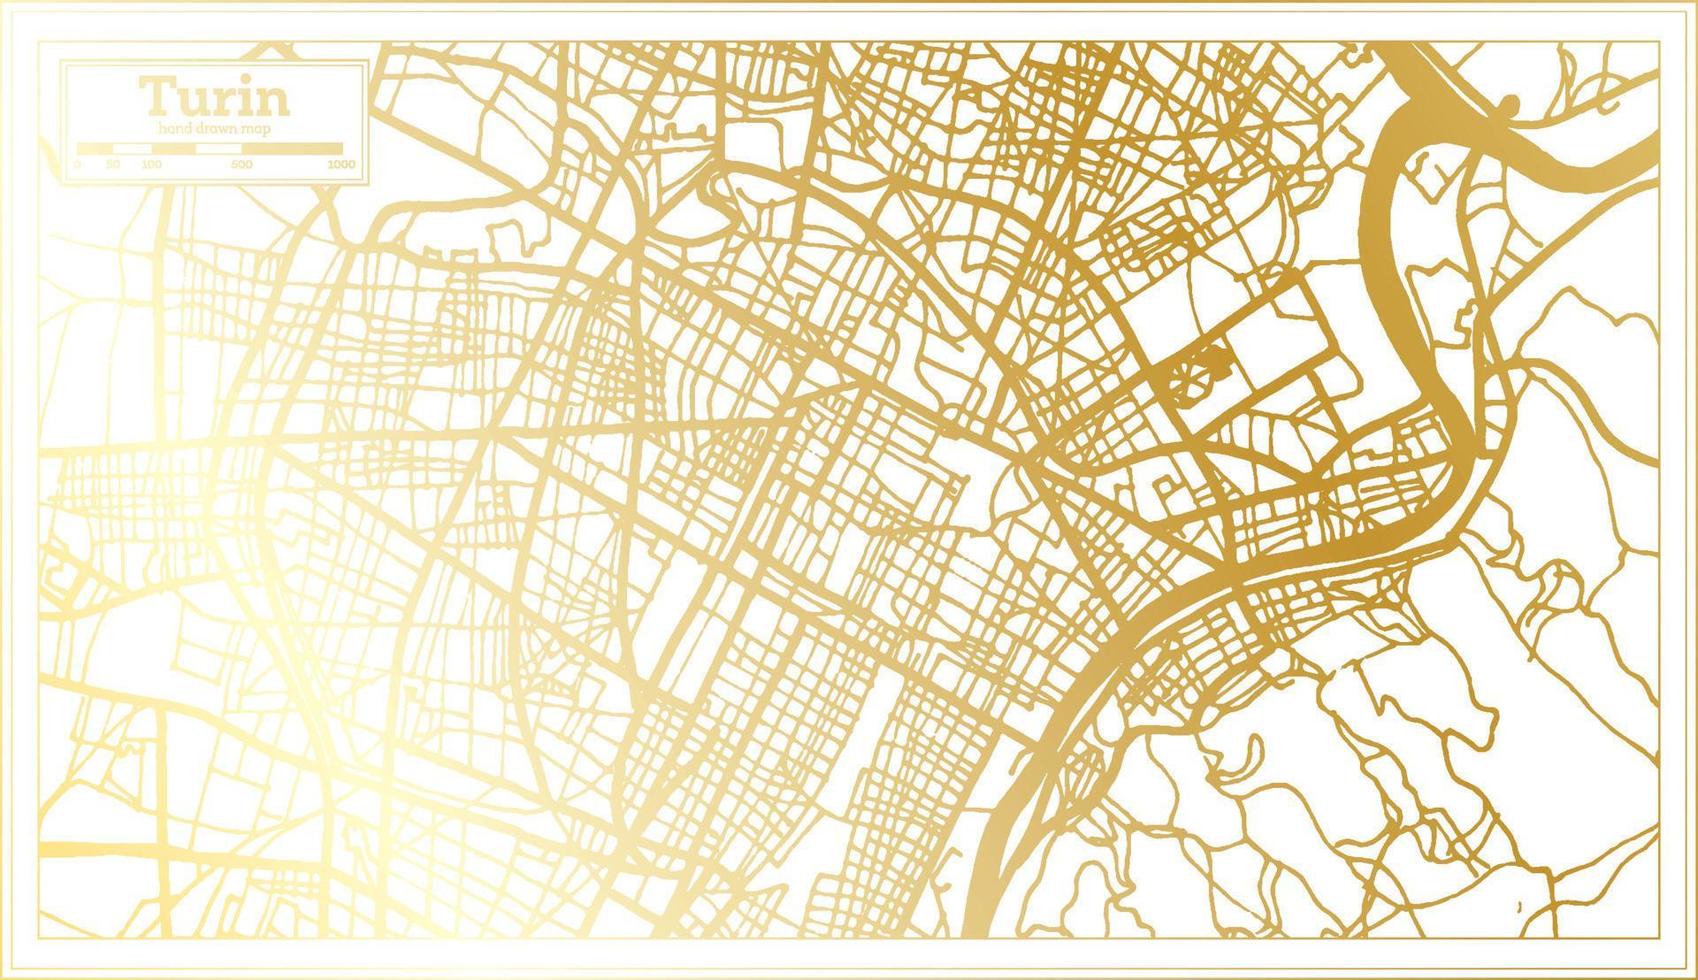 plan de la ville de turin italie dans un style rétro de couleur dorée. carte muette. vecteur